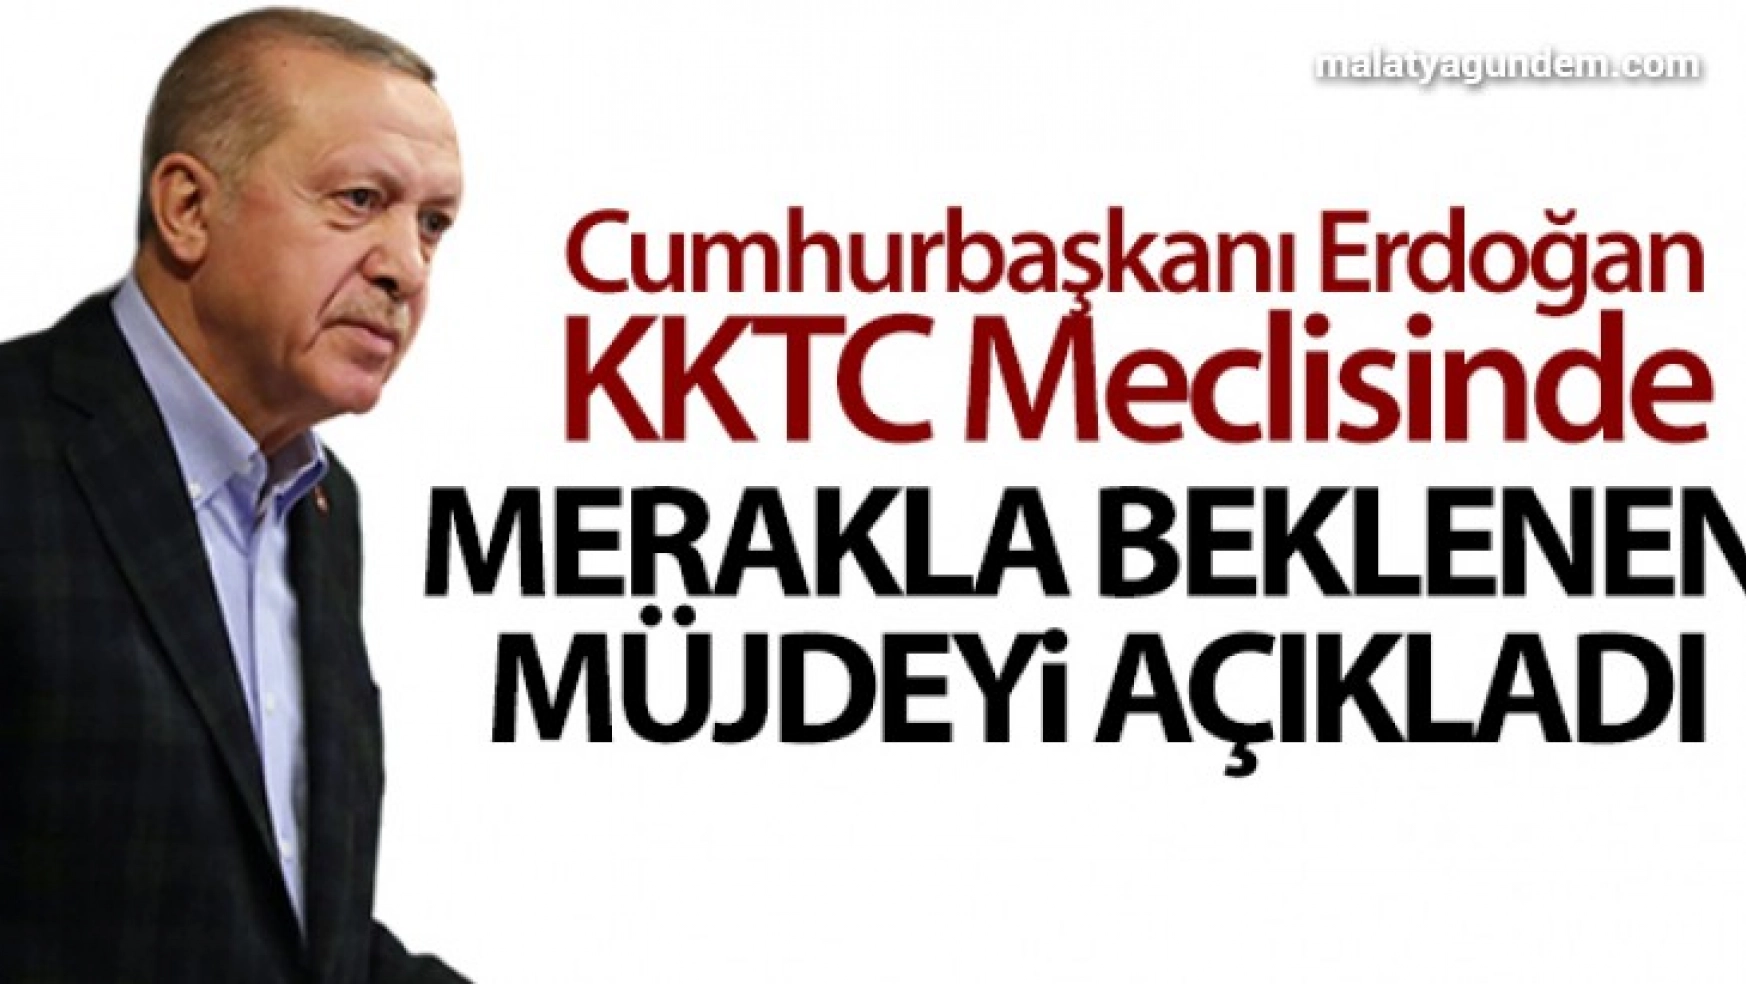 Cumhurbaşkanı Erdoğan KKTC meclisinde merakla beklenen müjdeyi açıkladı